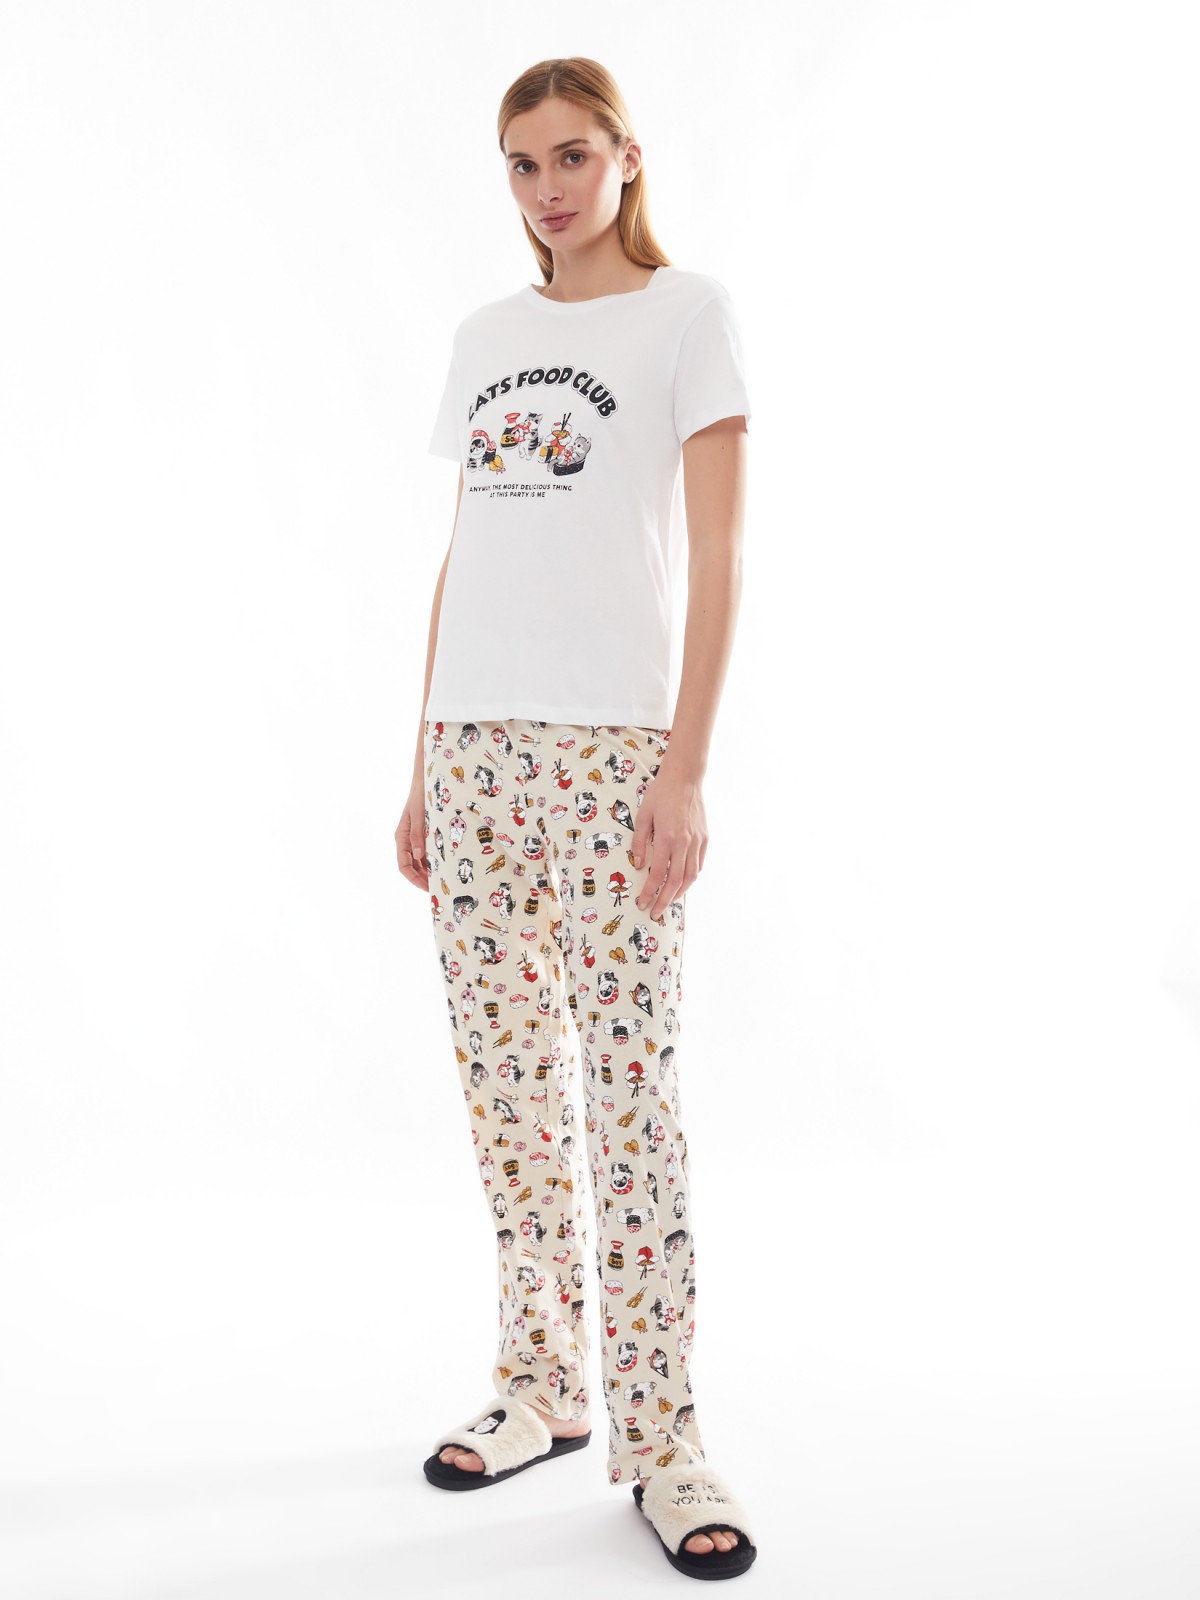 Домашний пижамный комплект из хлопка (футболка и штаны) zolla 624138738123, цвет молоко, размер XS